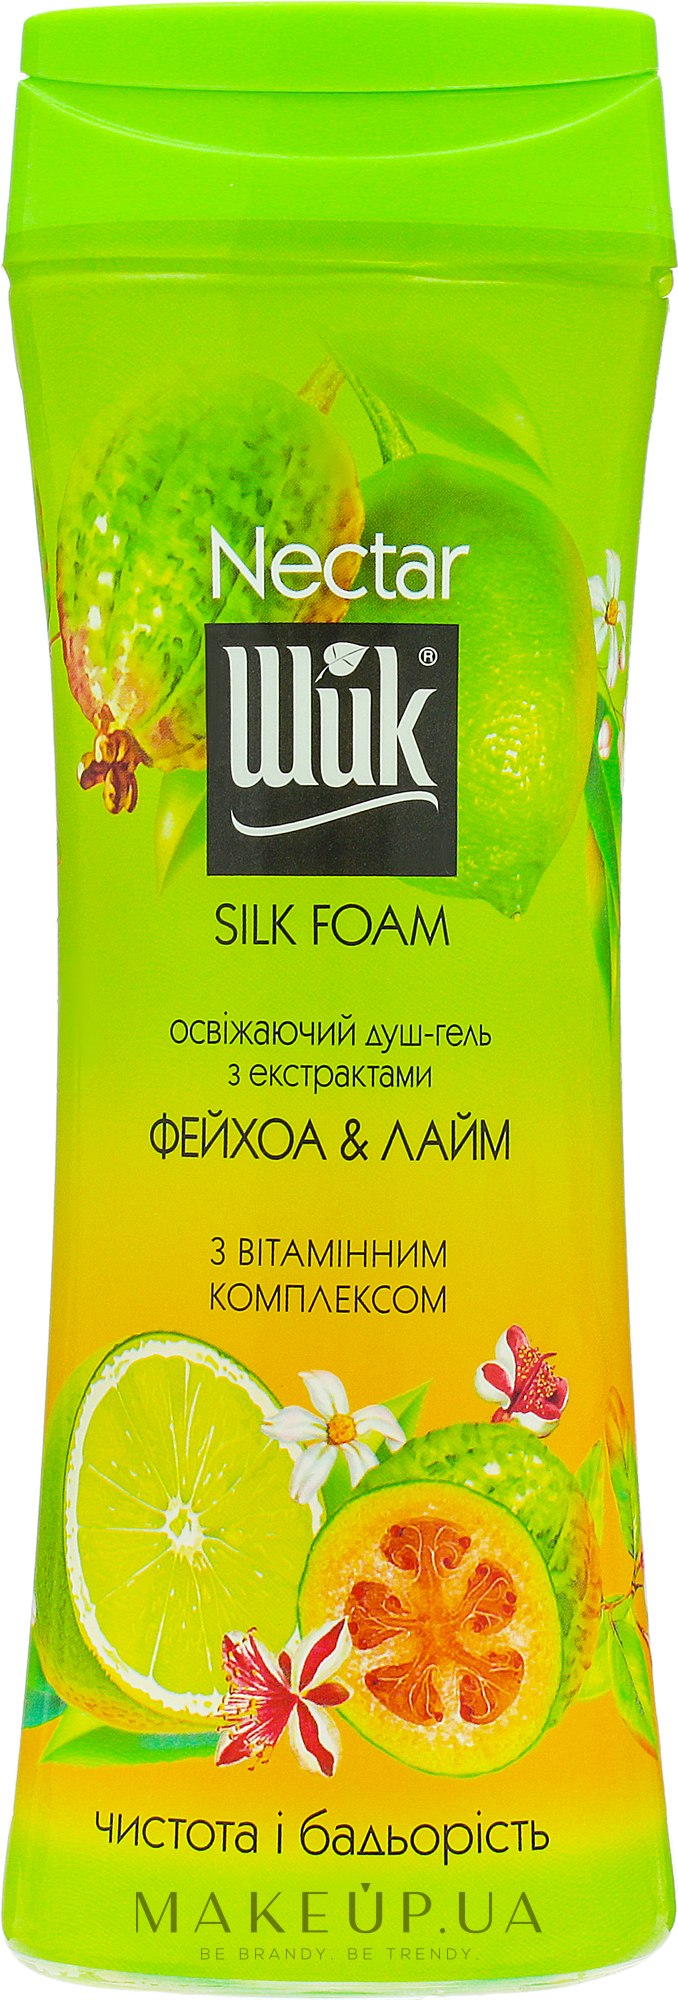 Освежающий душ-гель "Фейхоа и лайм" - Шик Nectar Silk Foam — фото 250ml